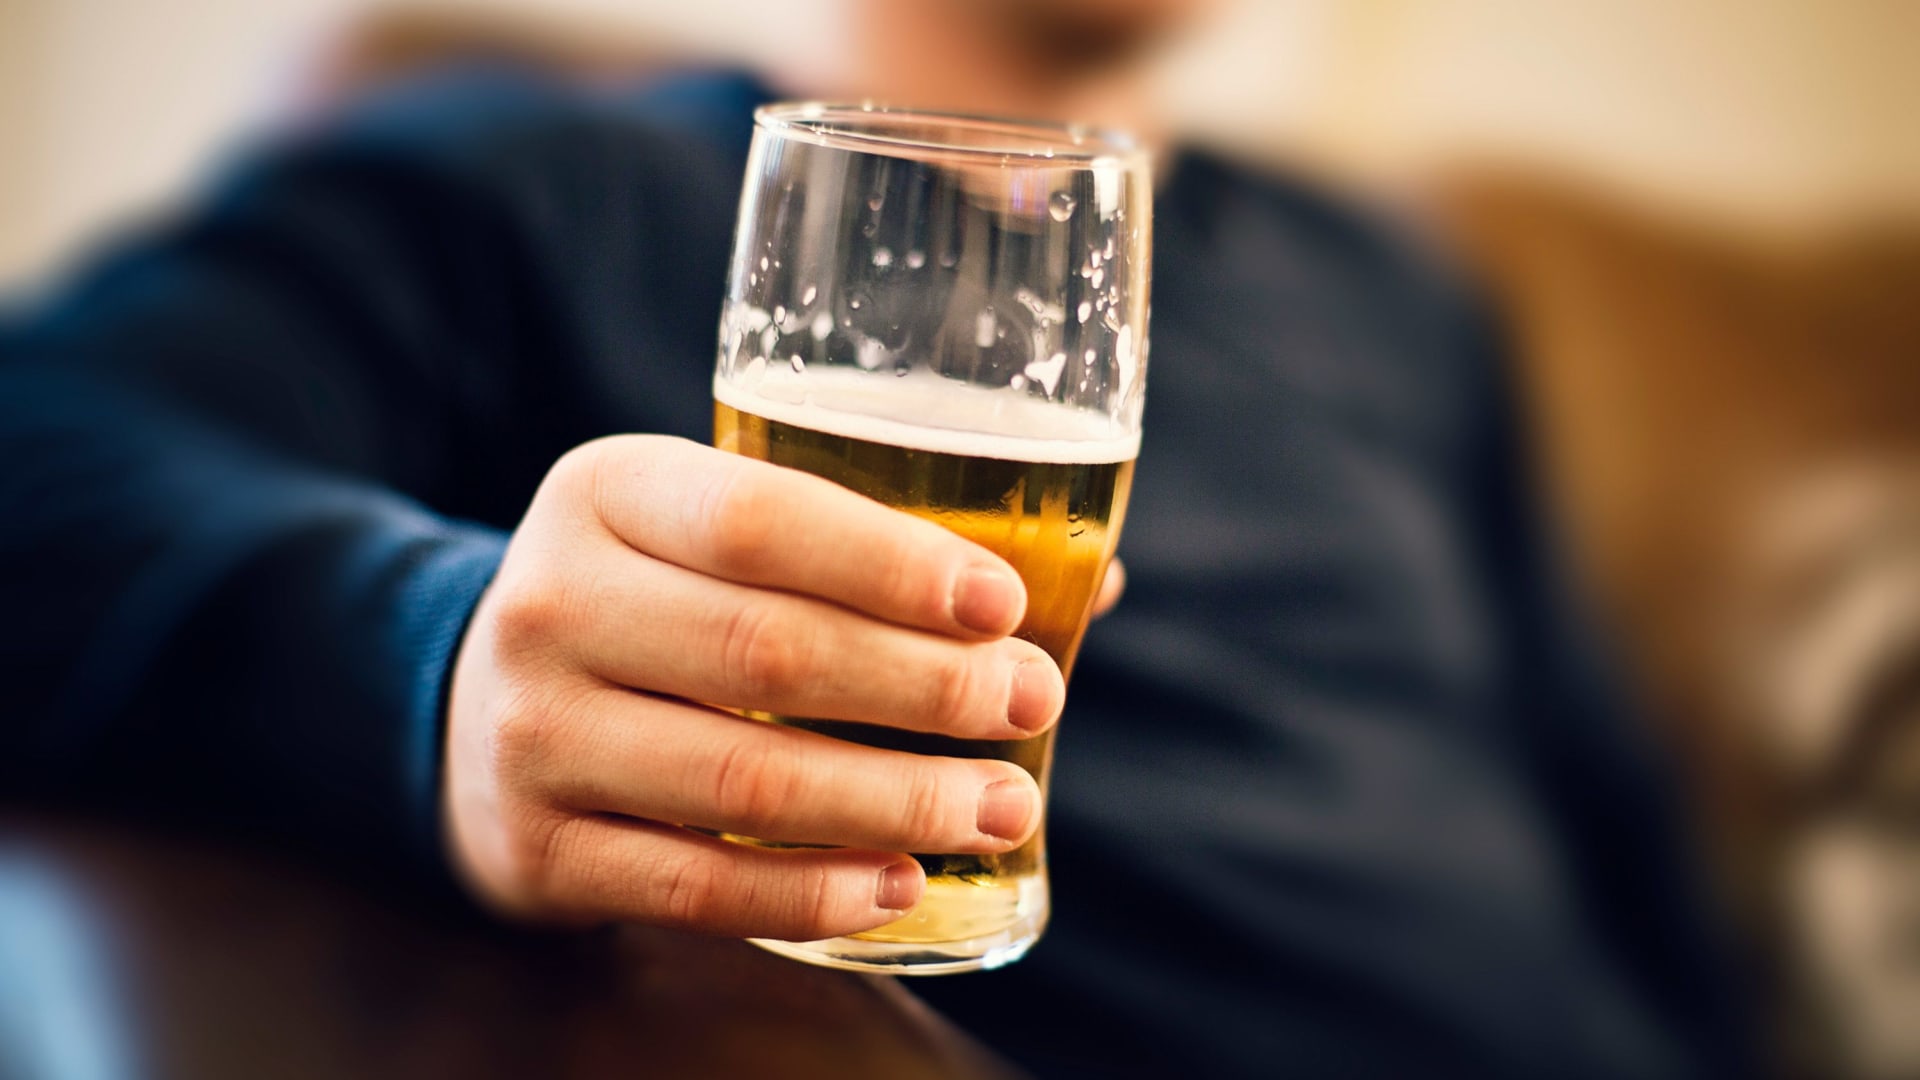 دراسة جديدة: للكحول فوائد منها تخفيف التوتر ومخاطر الإصابة بالنوبات القلبية والسكتة الدماغية!